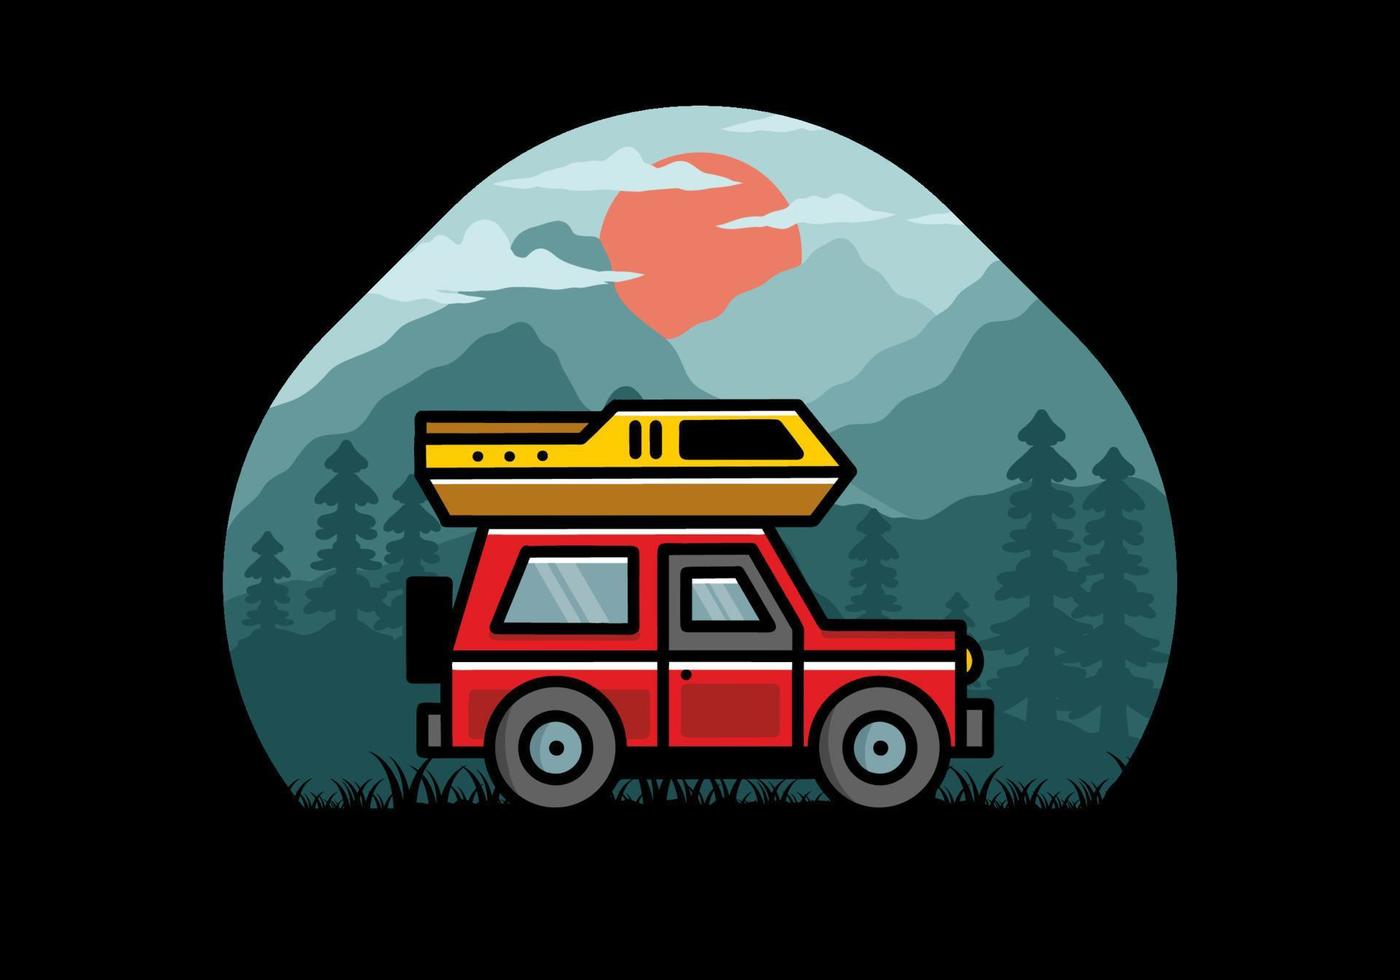 diseño de placa de ilustración de camping de coche de vehículo todoterreno vector